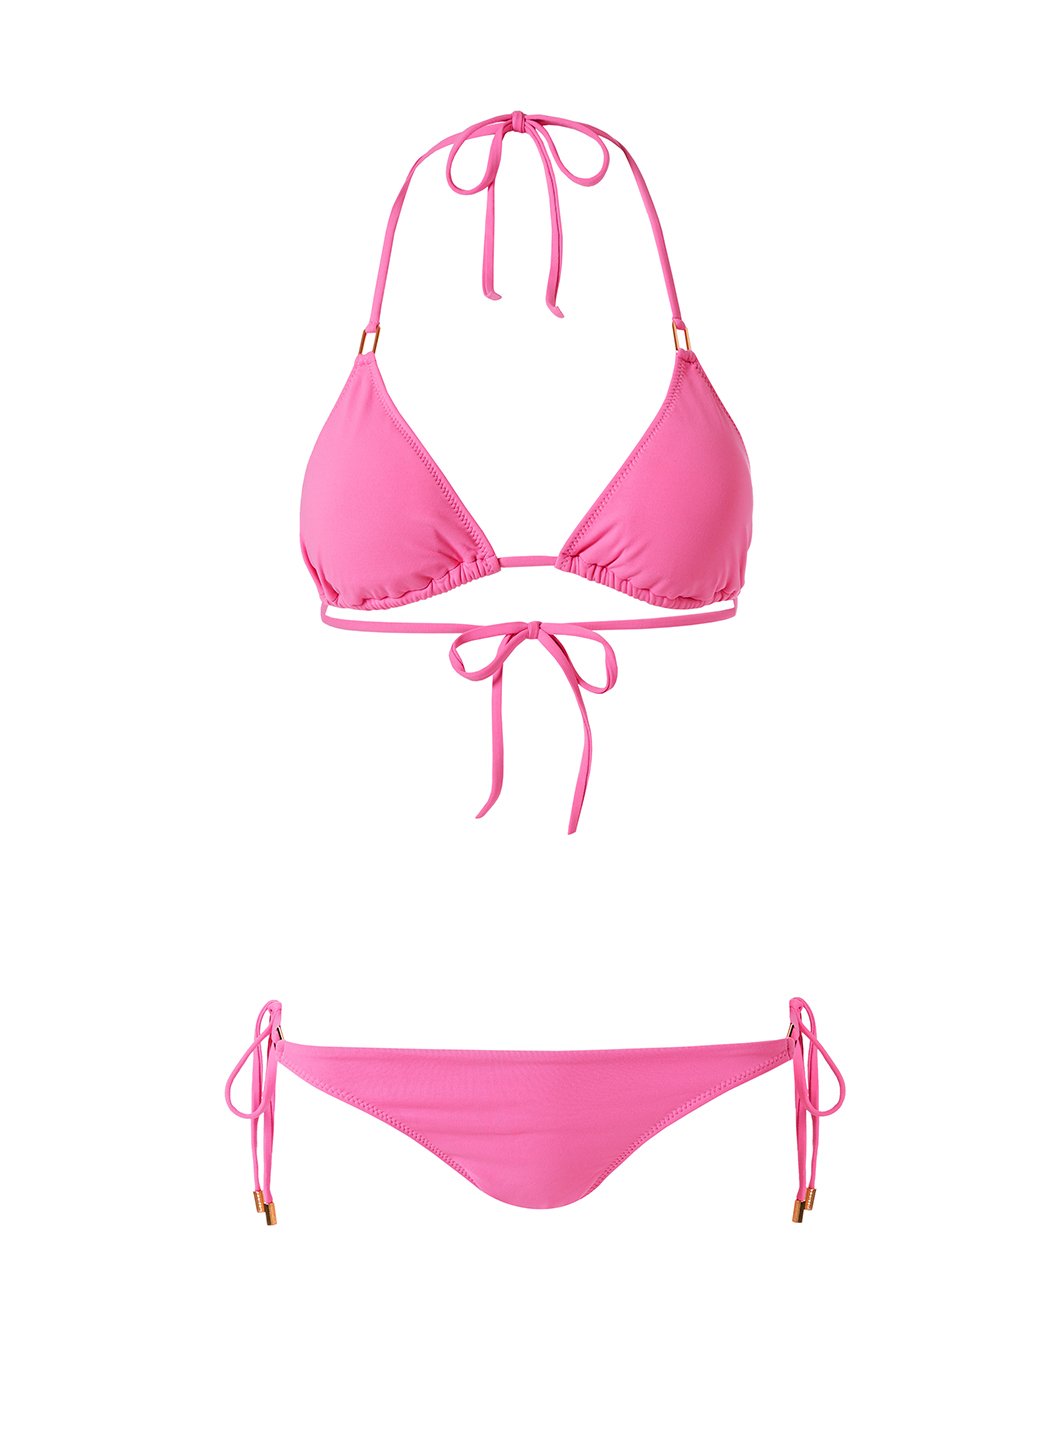 Cancun Flamingo Bikini Bottom